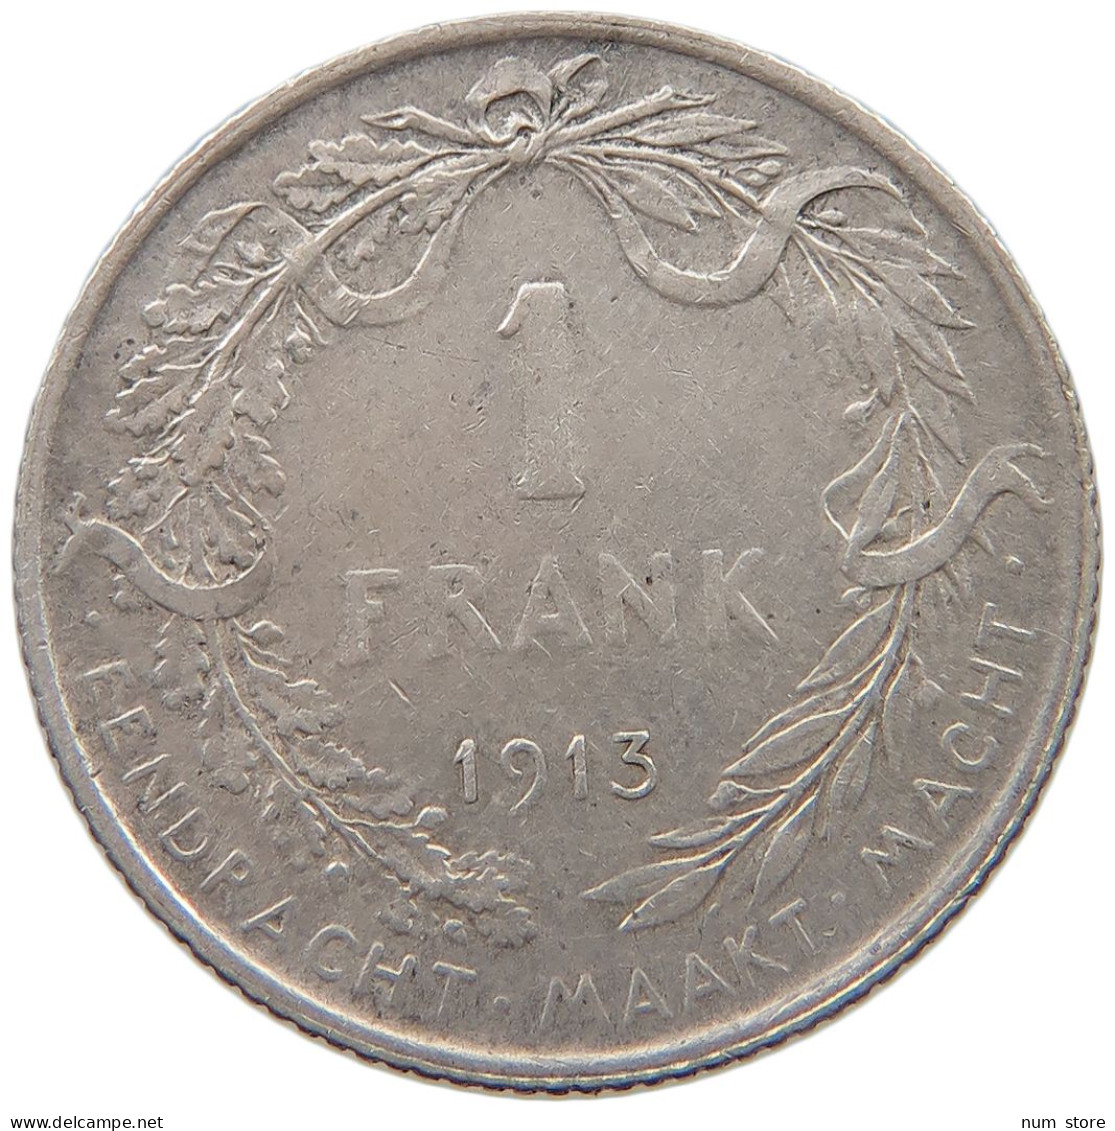 BELGIUM FRANC 1913 Albert I. 1909-1934 #c007 0451 - 1 Franc